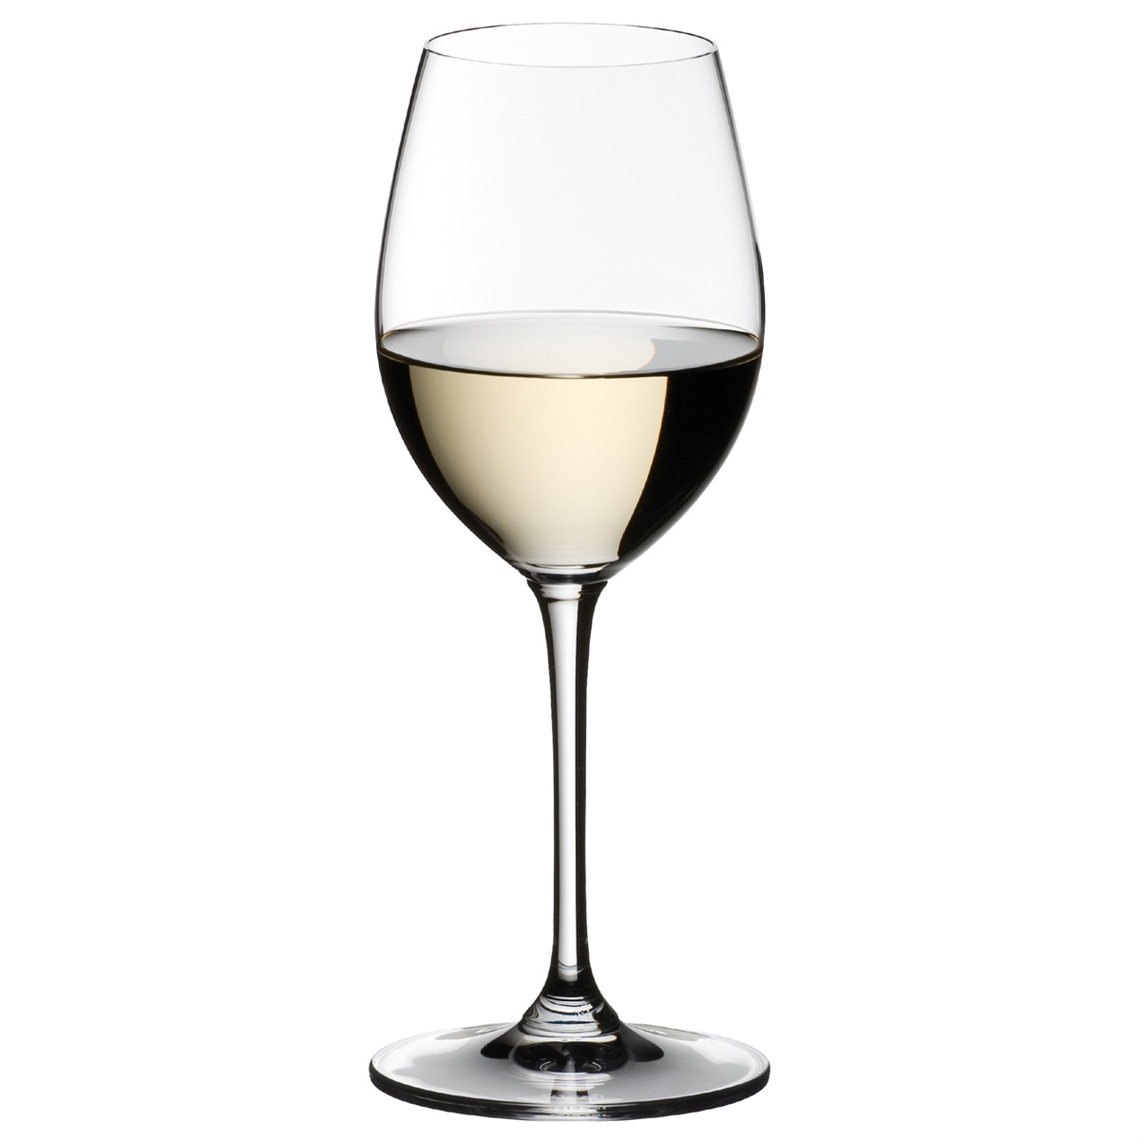 View more restaurant glasses - mark thomas from our Dessert Wine Glasses range